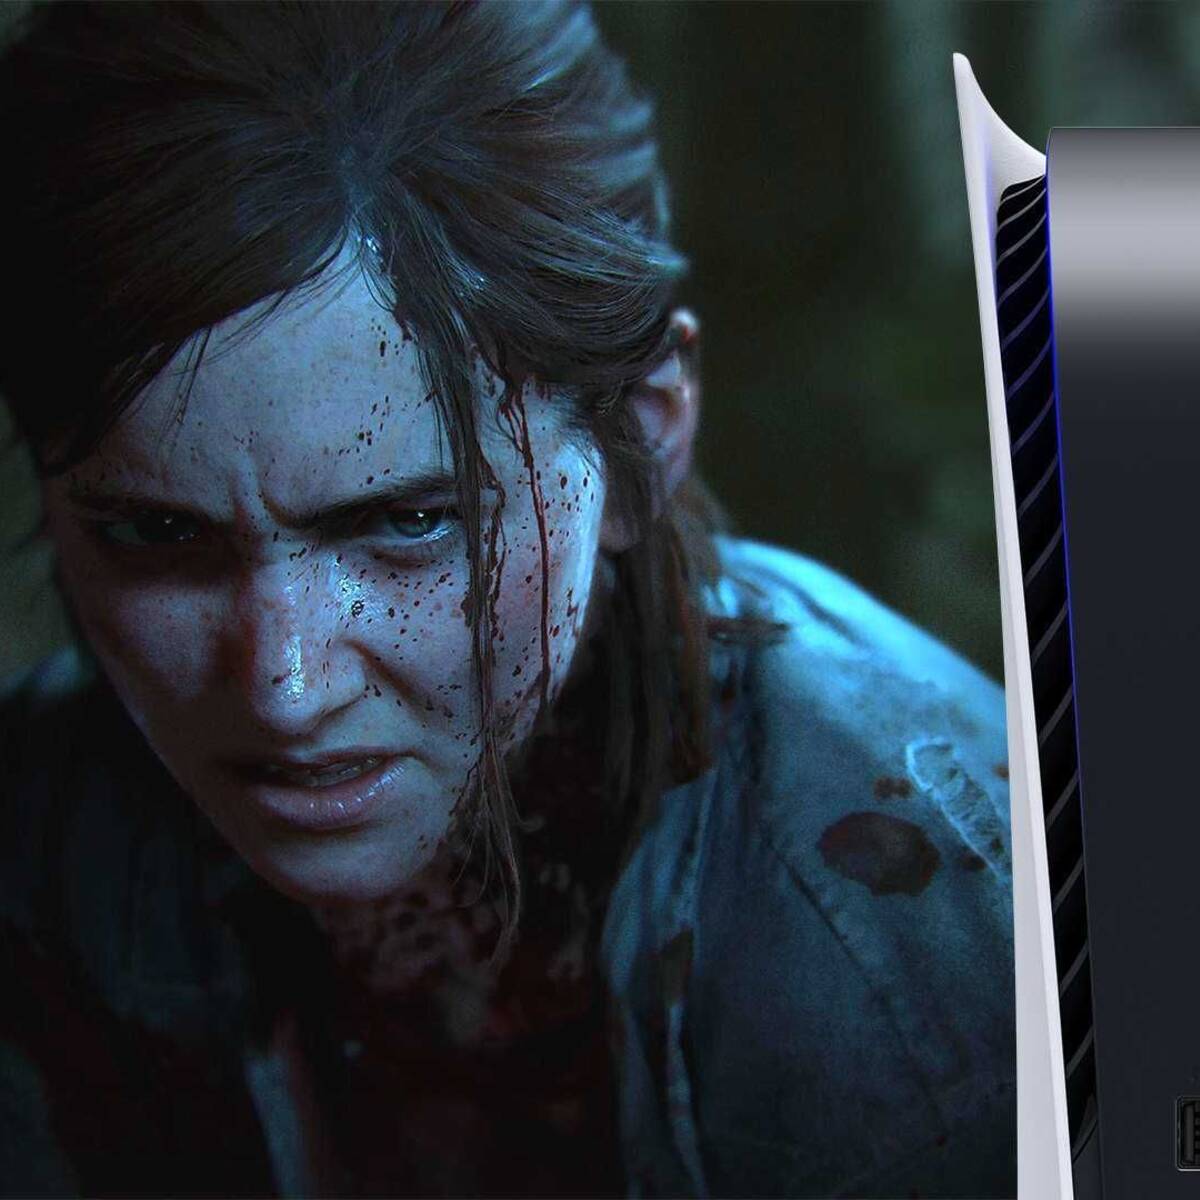 The Last of Us Part II – PS5 Parche de Rendimiento mejorado